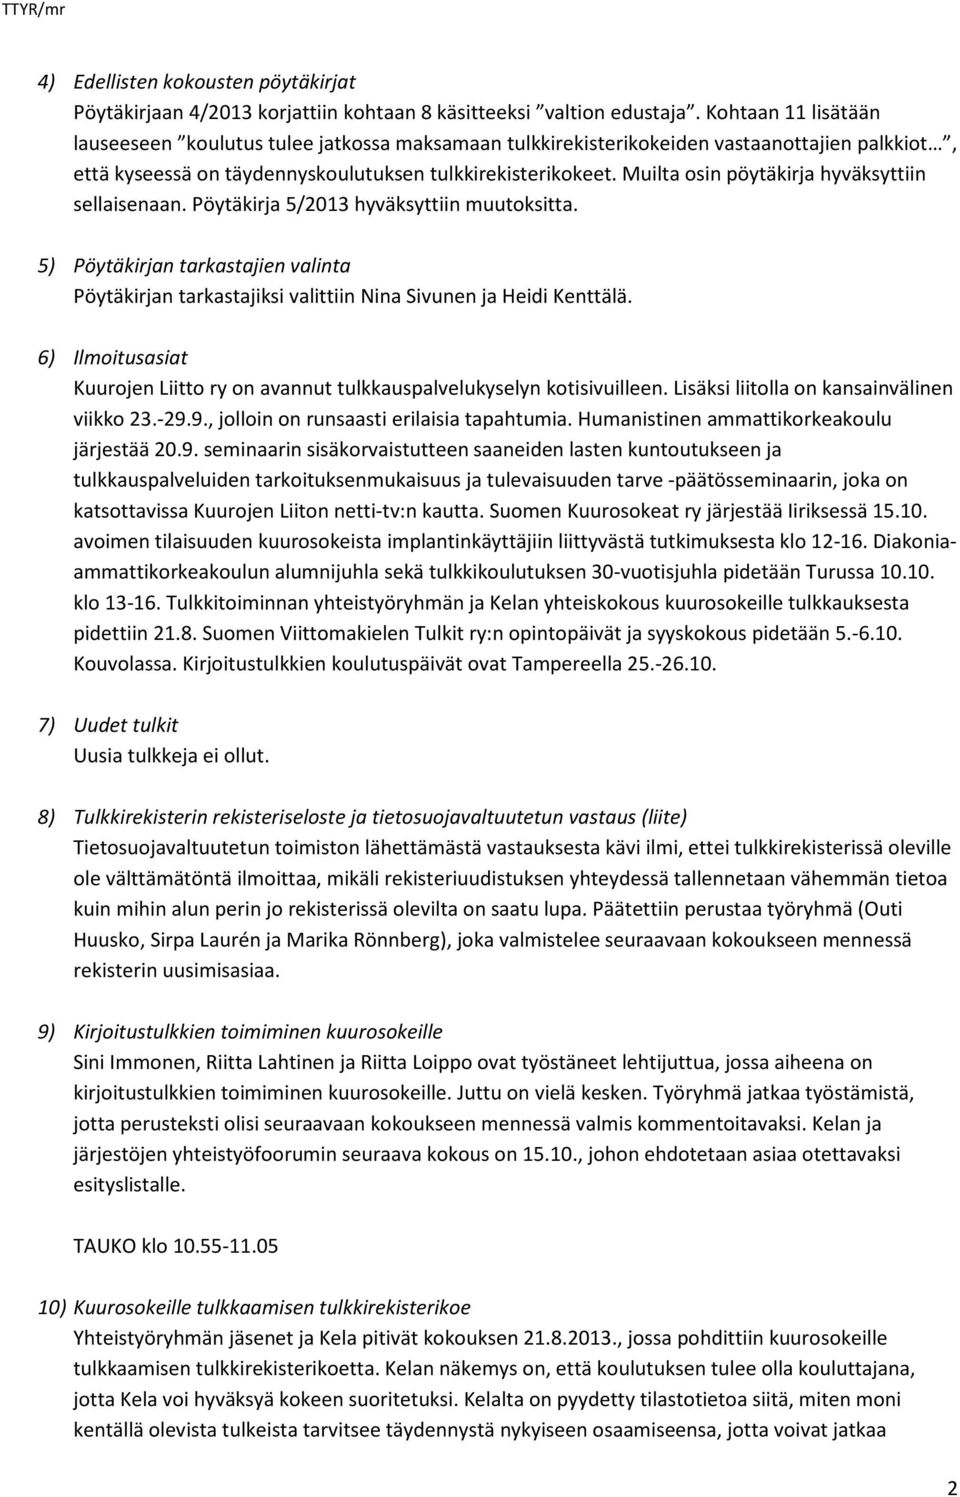 Muilta osin pöytäkirja hyväksyttiin sellaisenaan. Pöytäkirja 5/2013 hyväksyttiin muutoksitta. 5) Pöytäkirjan tarkastajien valinta Pöytäkirjan tarkastajiksi valittiin Nina Sivunen ja Heidi Kenttälä.